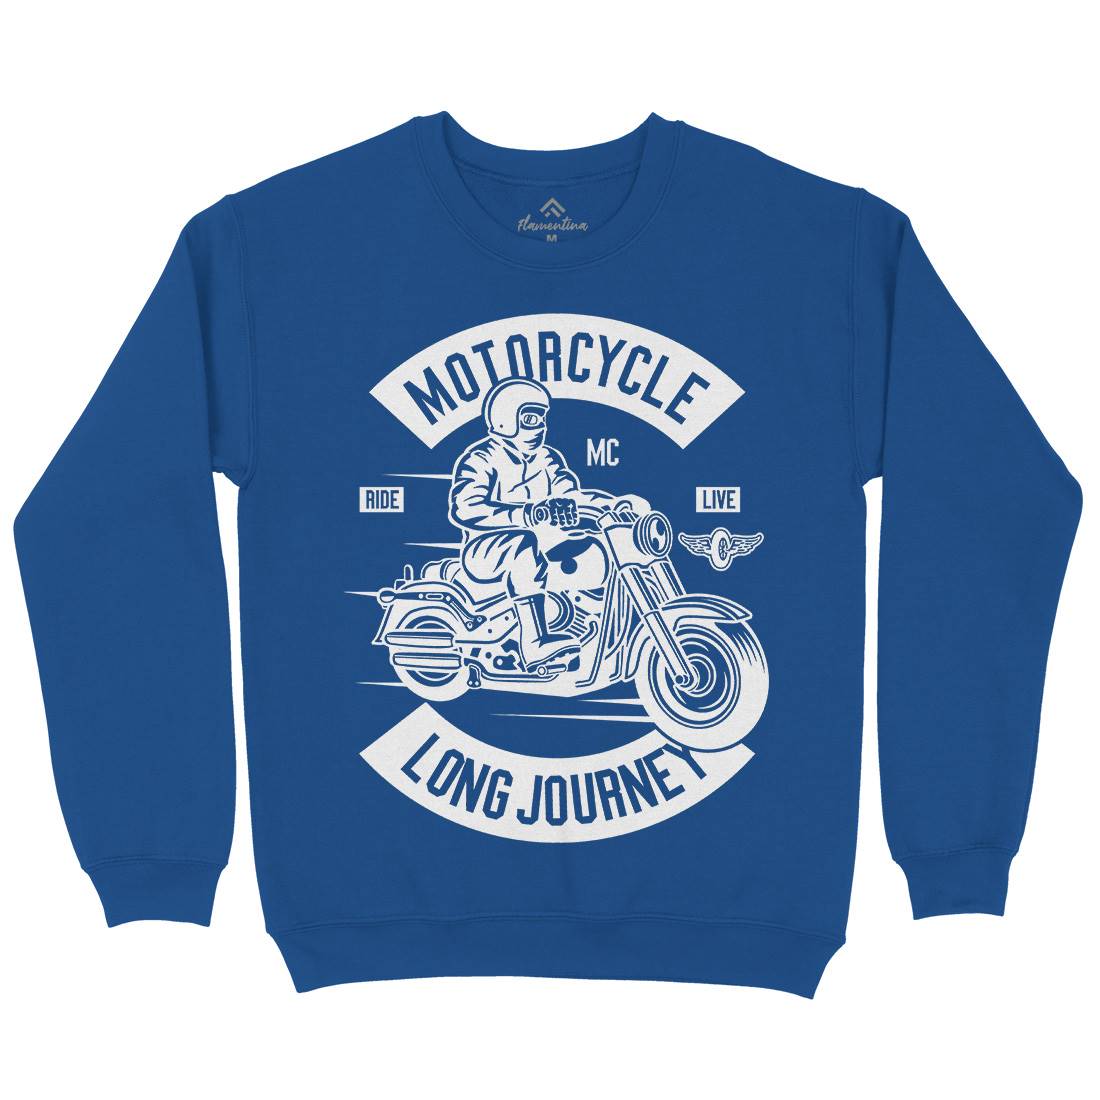 Long Journey Kids Crew Neck Sweatshirt Motorcycles B583